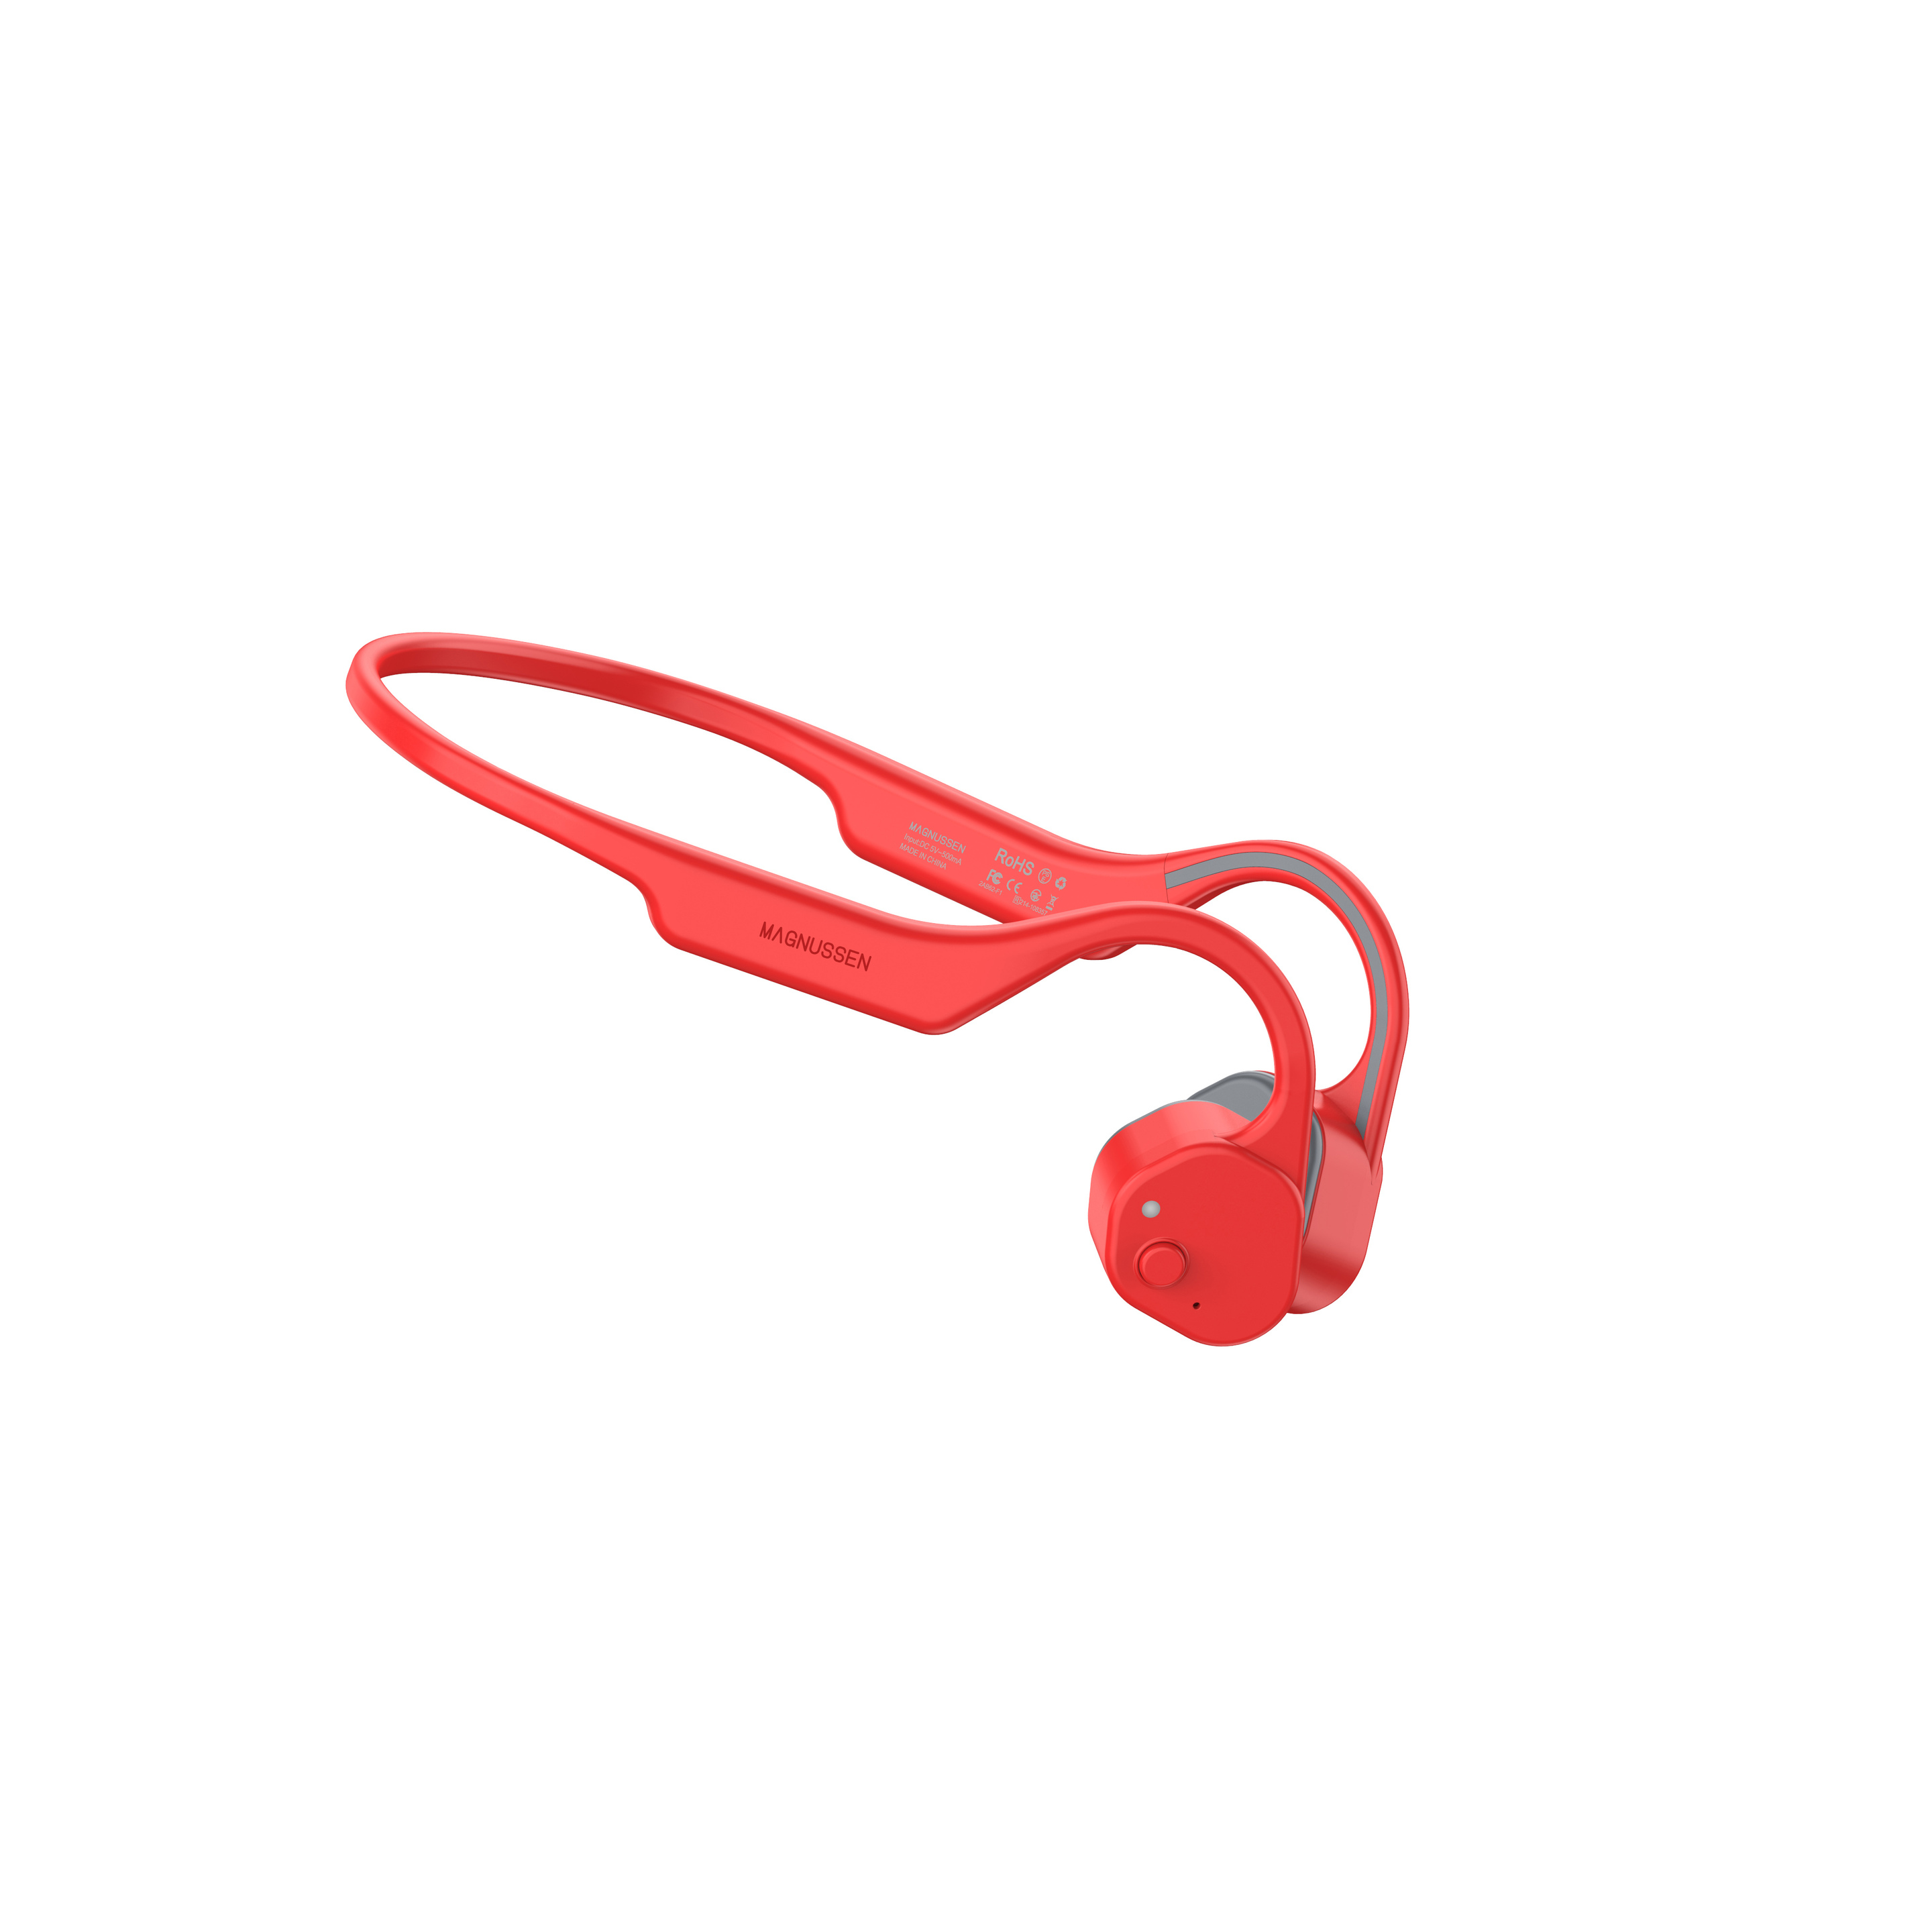 Auricular Bluetooth Magnusen F3 - Rojo  MKP